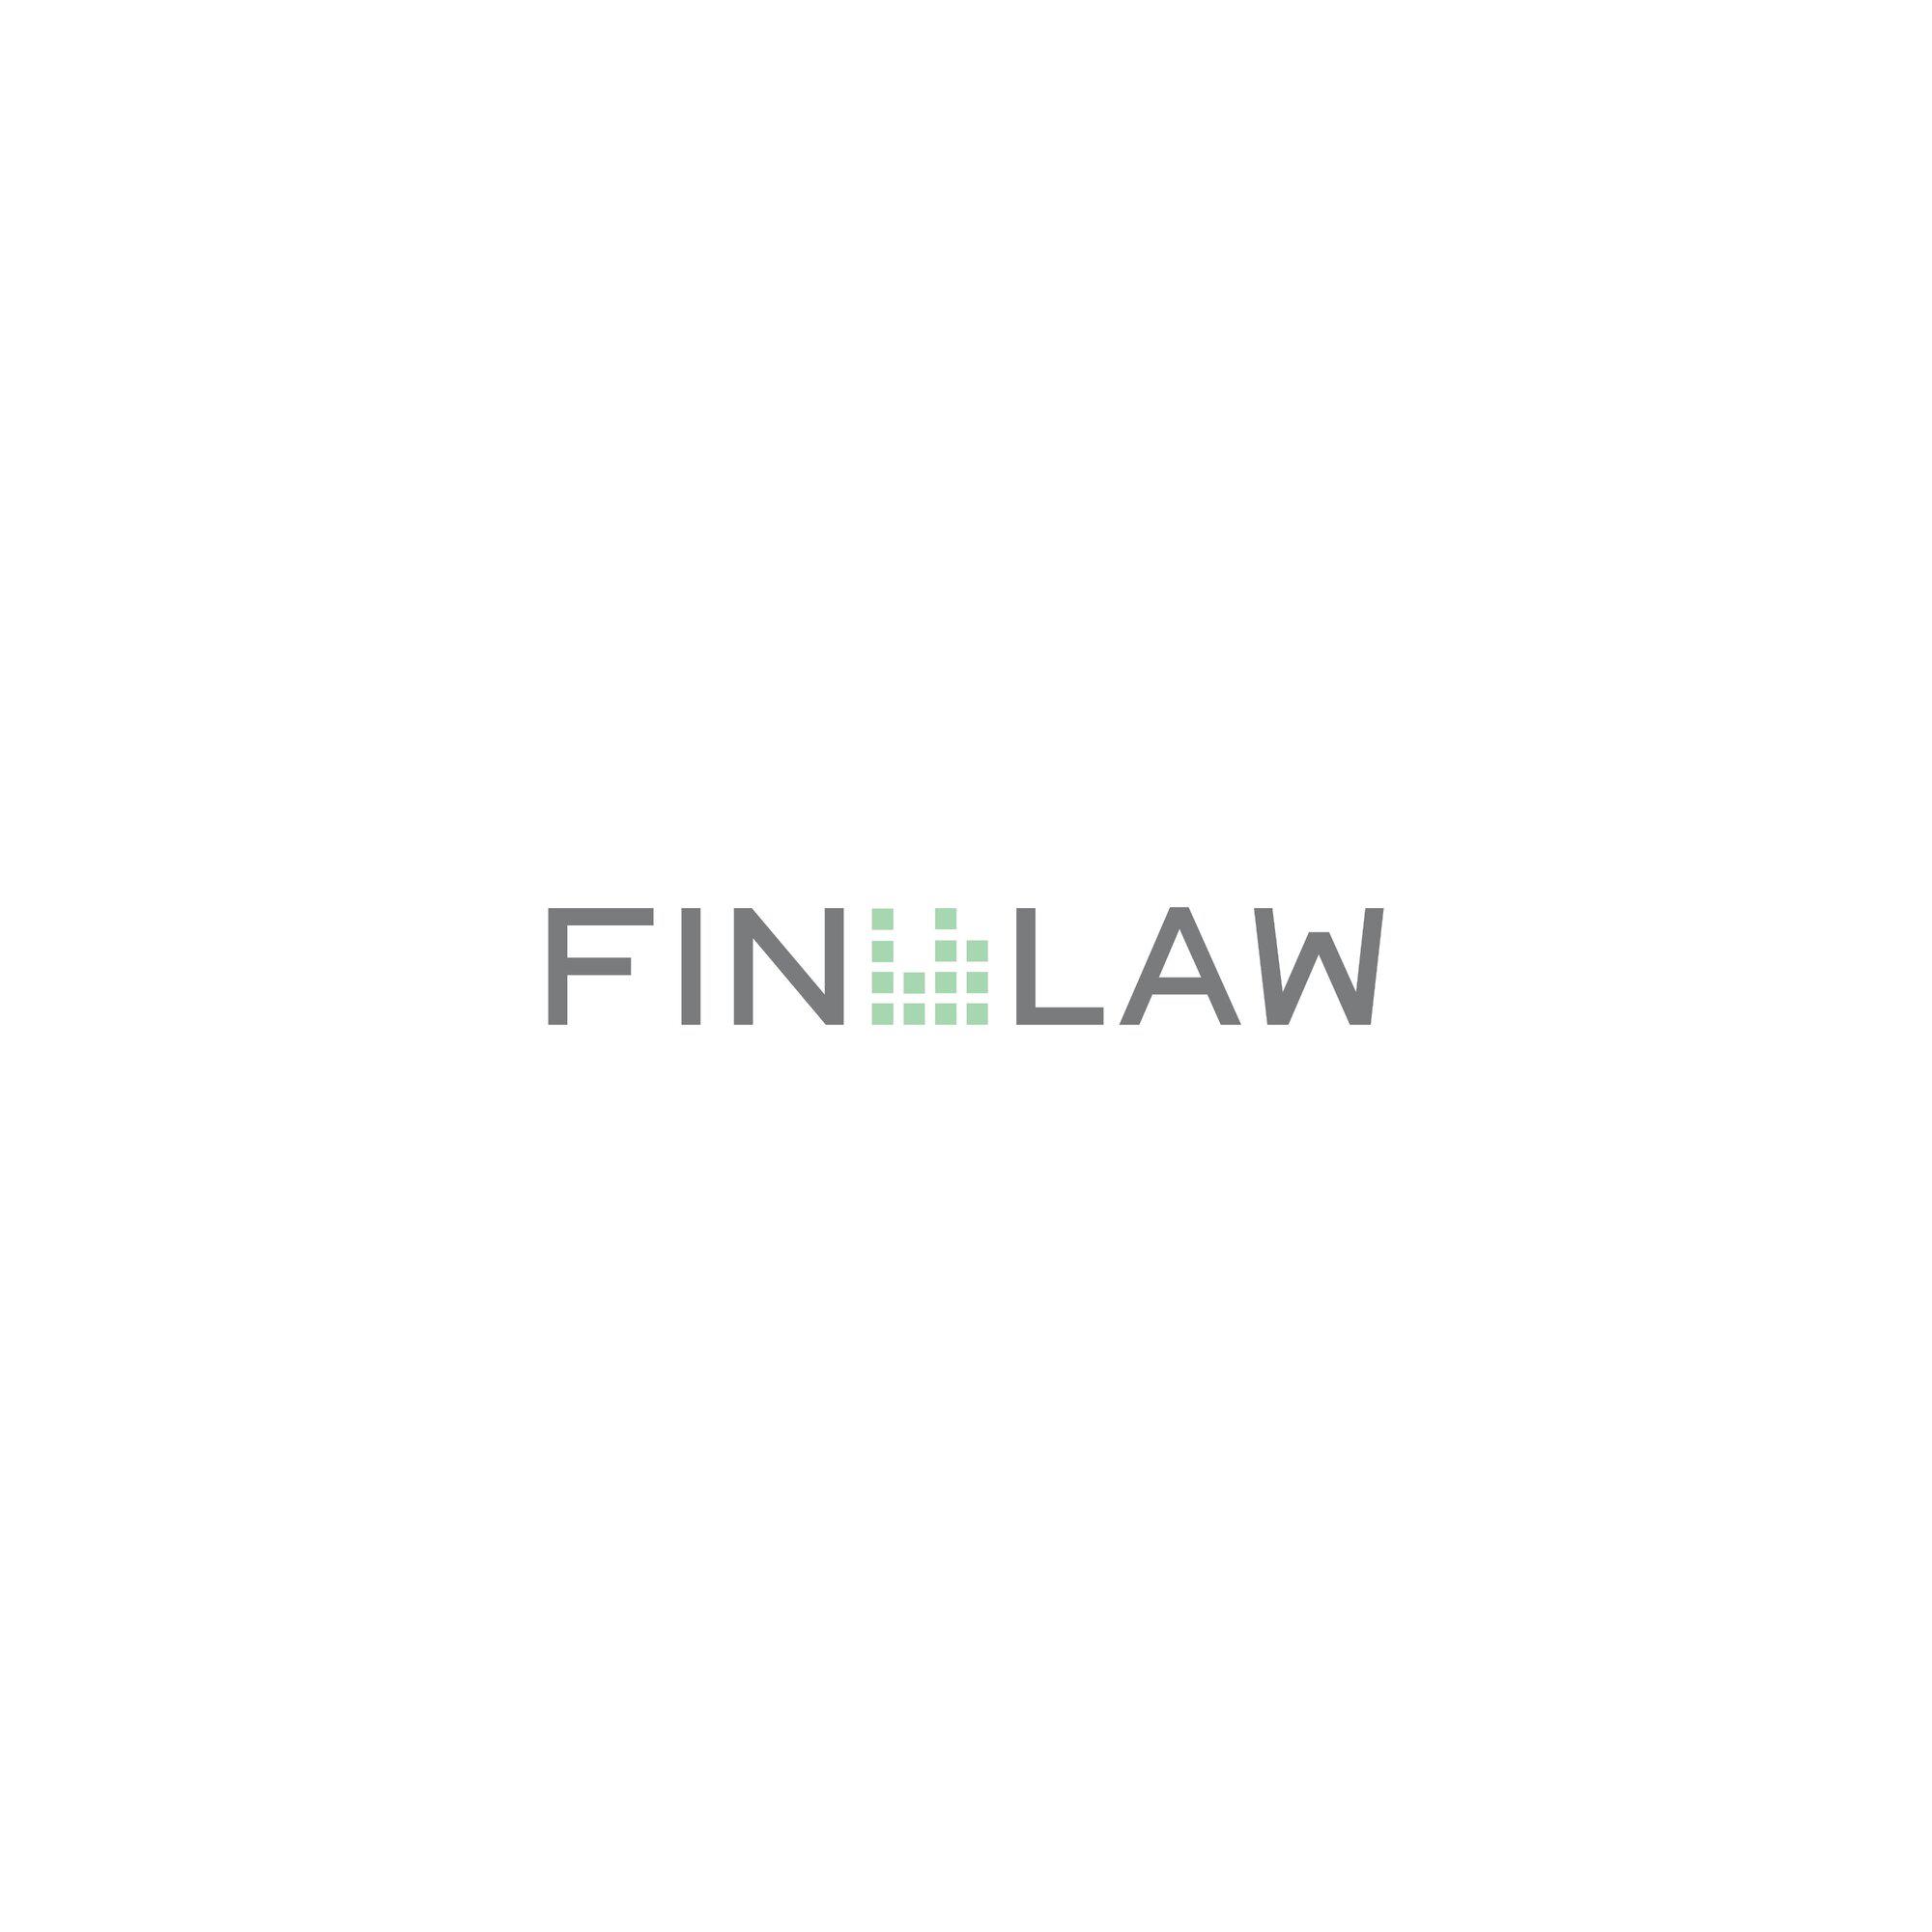 Kundenbild groß 10 FIN LAW - Legal Financial Advisory